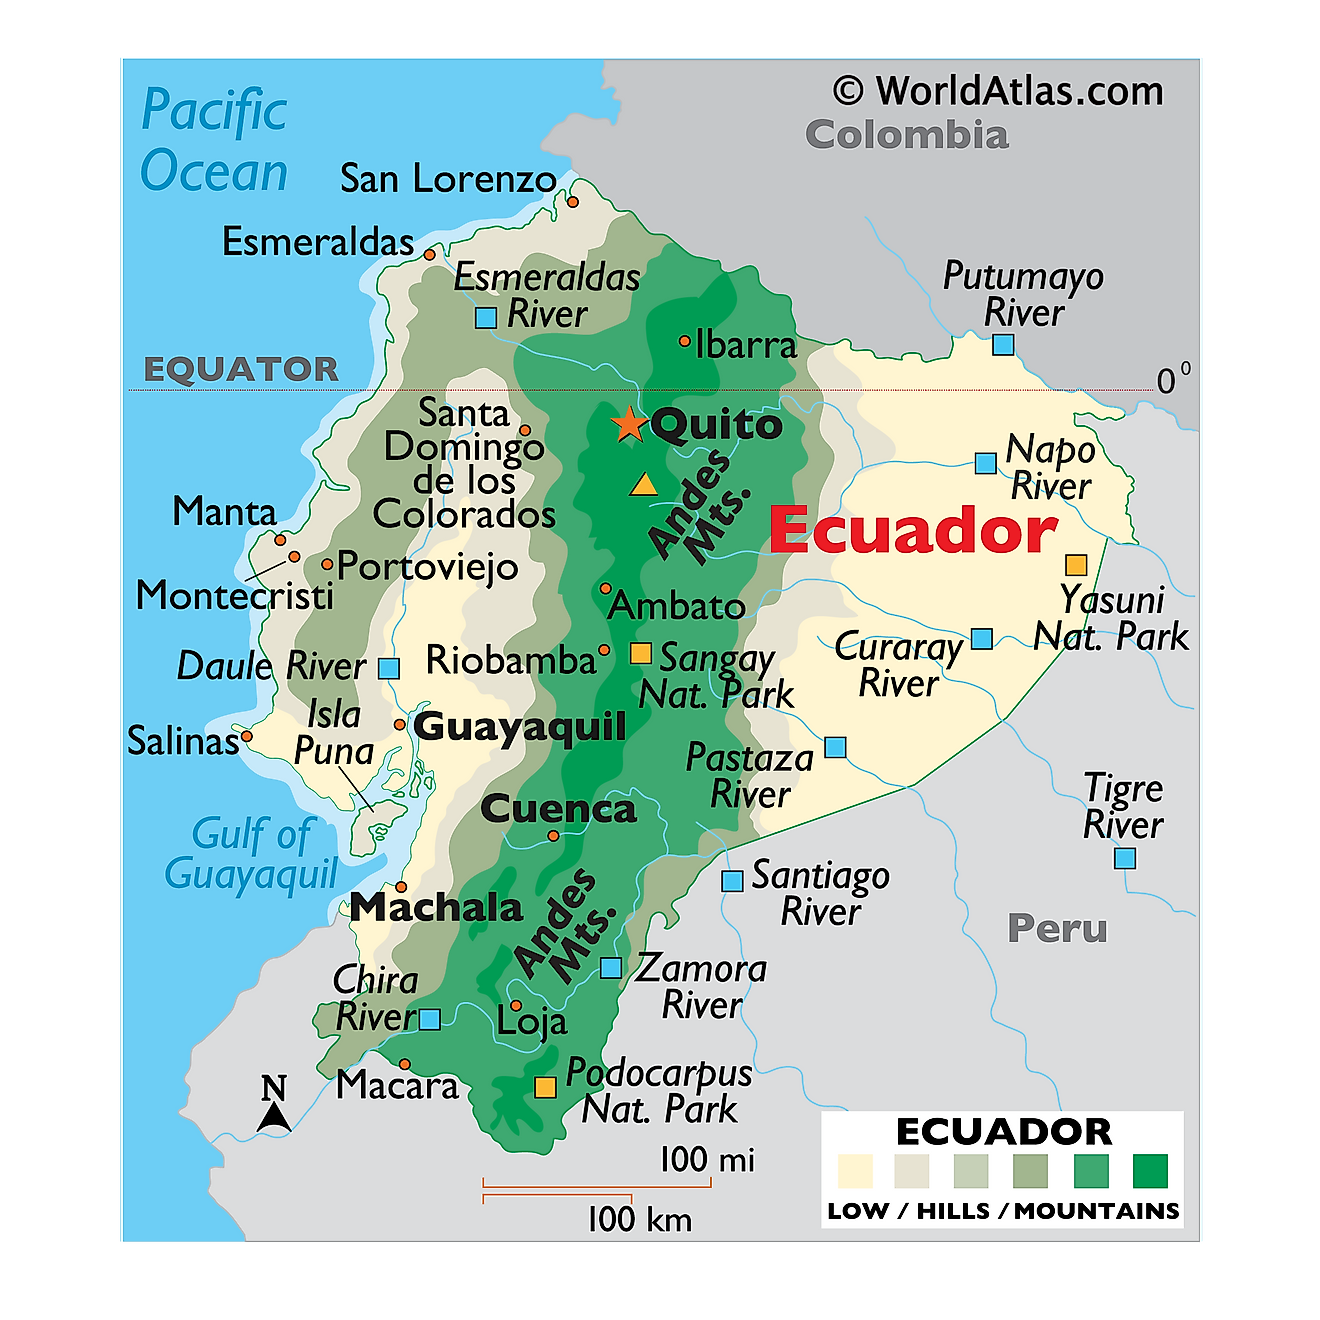 Mapa Físico del Ecuador mostrando relieve, ríos, cadenas montañosas, ciudades importantes, países limítrofes, y más.